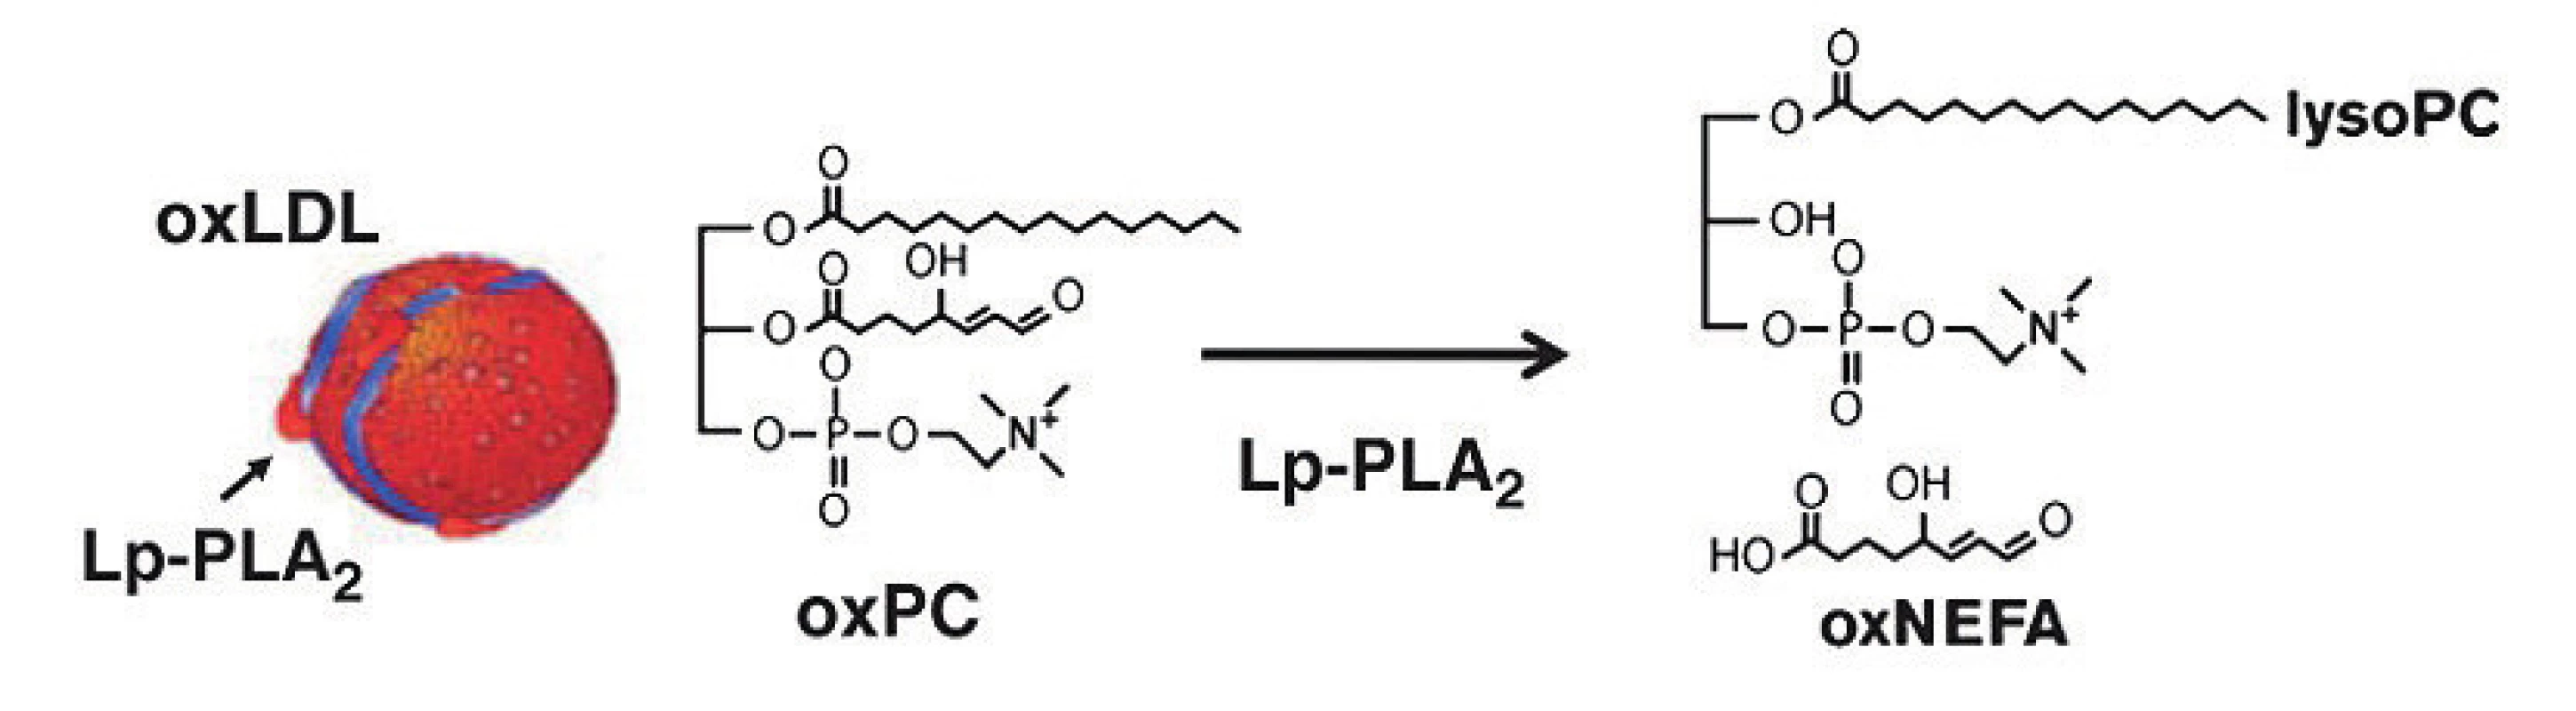 Lp-PLA2 účinek. Oxidované fosfolipidy (oxPC) jsou hydrolizovány na lysofosfatidylcholin
(lysoPC) a na oxidované neesterifikované mastné kyseliny (oxNEFA) (Macphee, Nelson
and Zalewski, 2006)